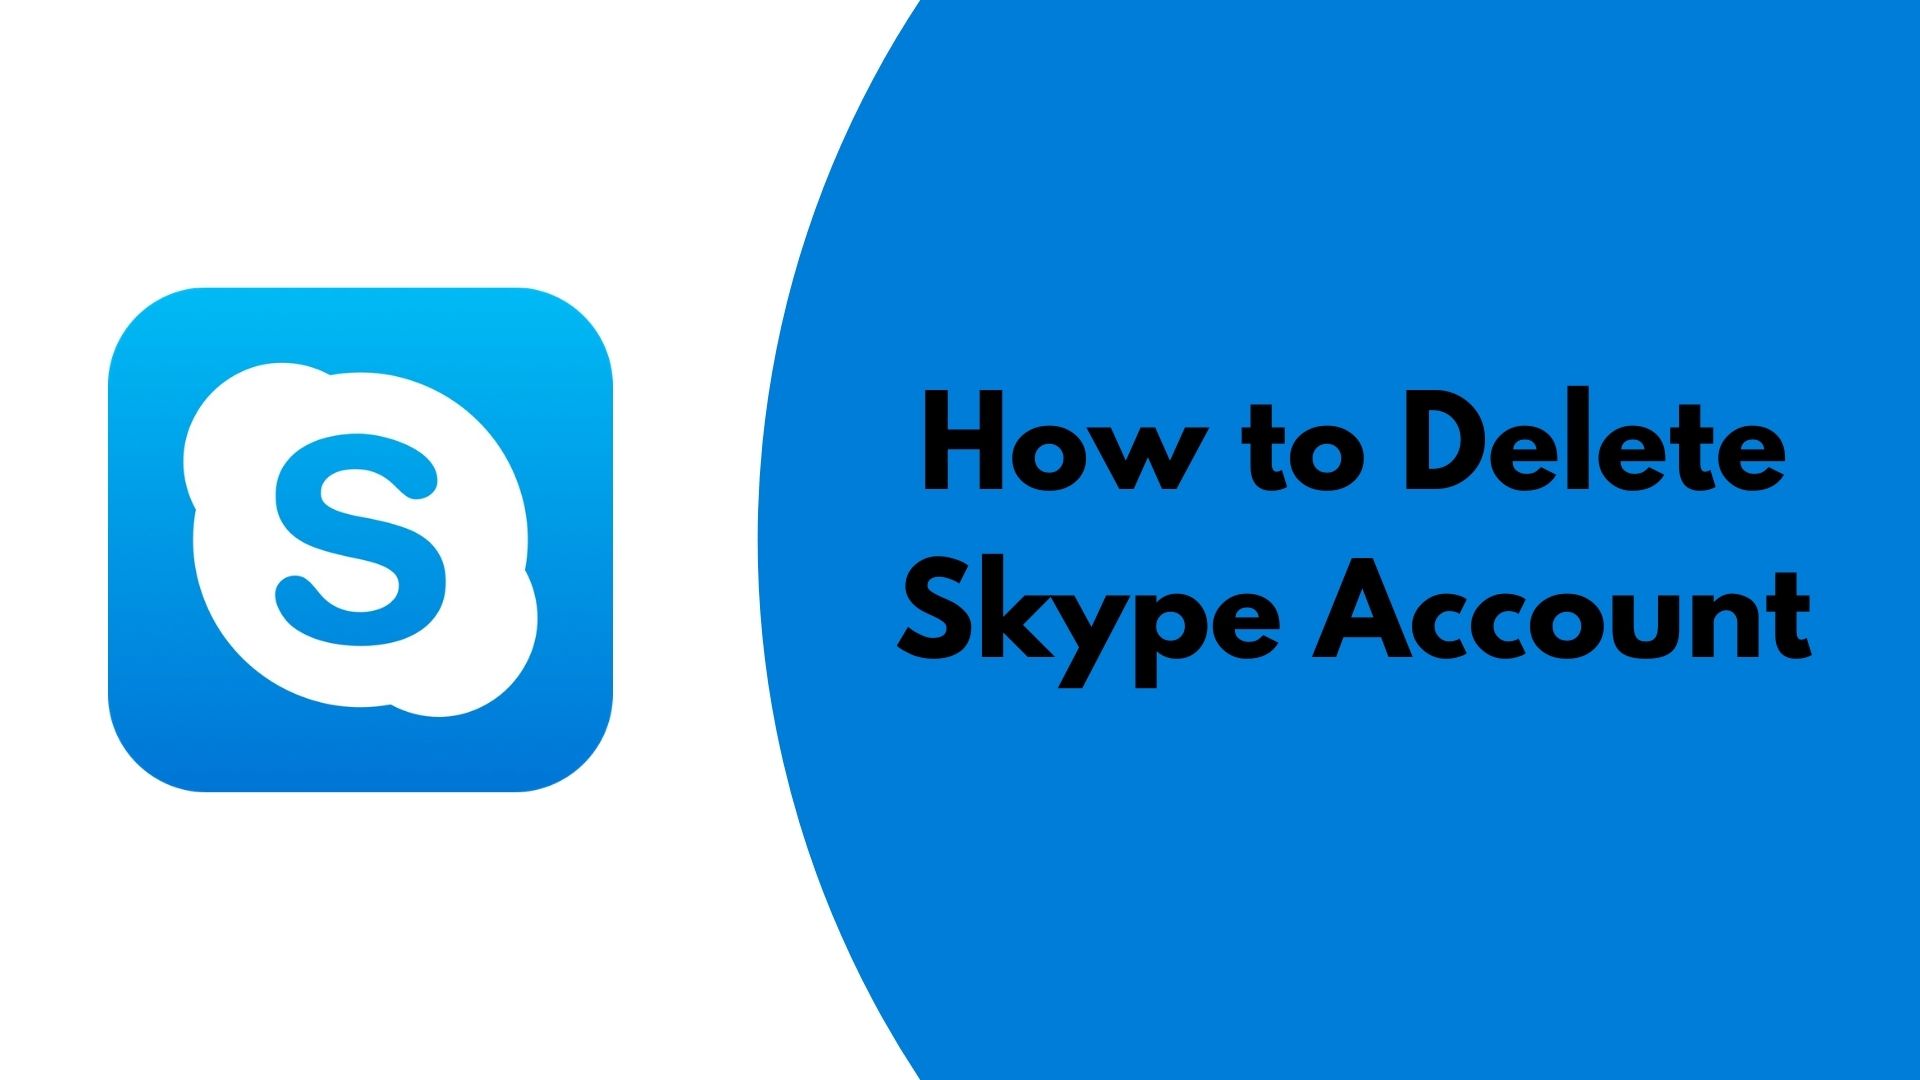 how to delete skype account 2020